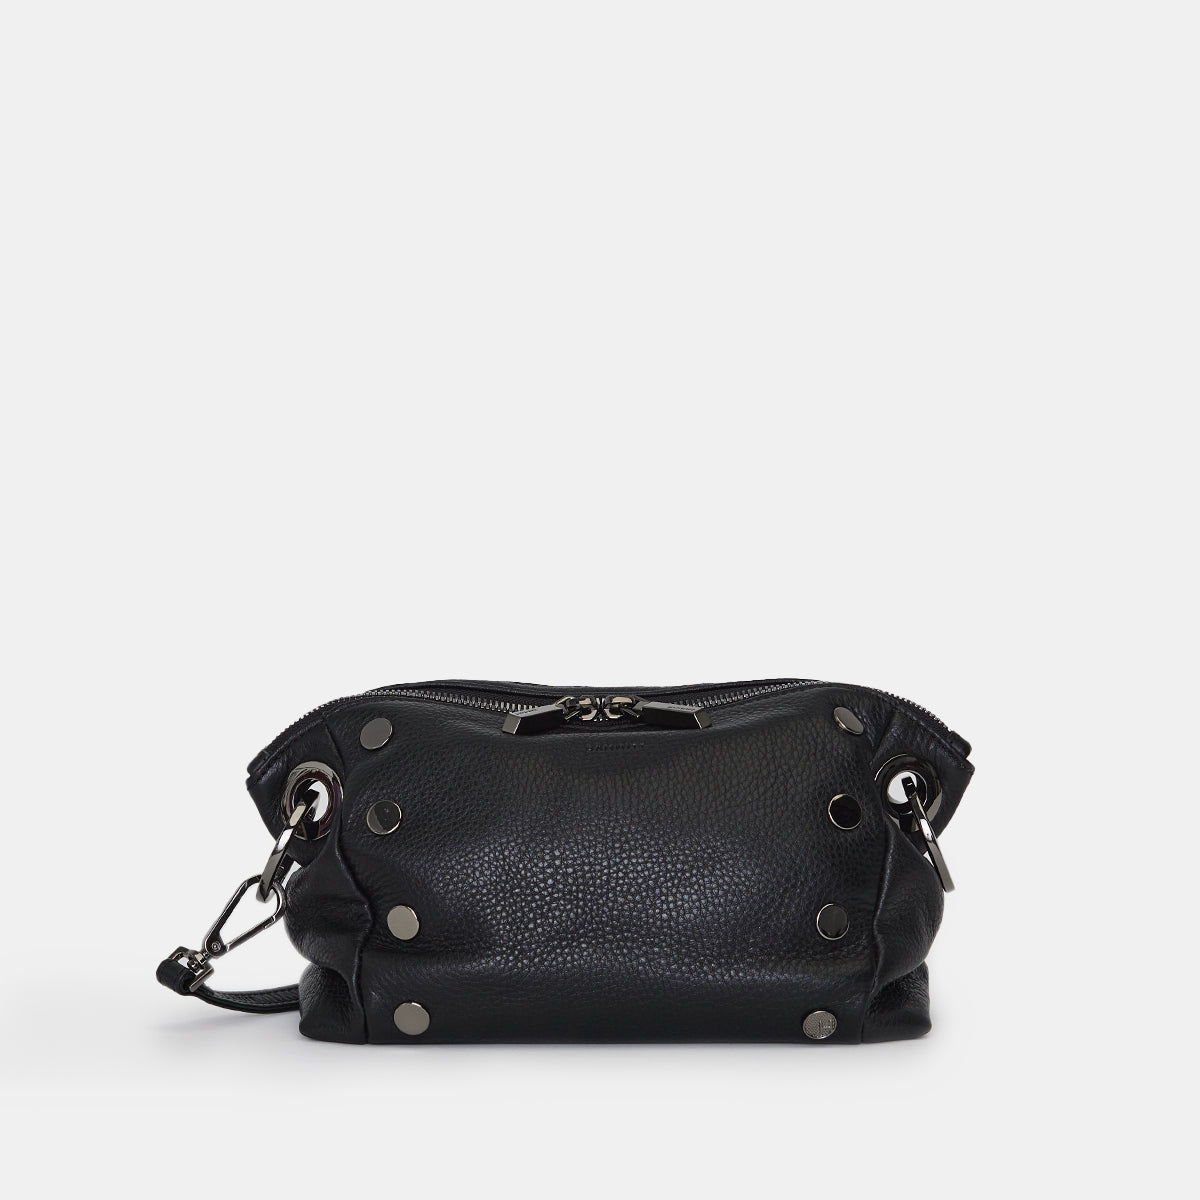 Shop Premium Leather Handbags & Wallets